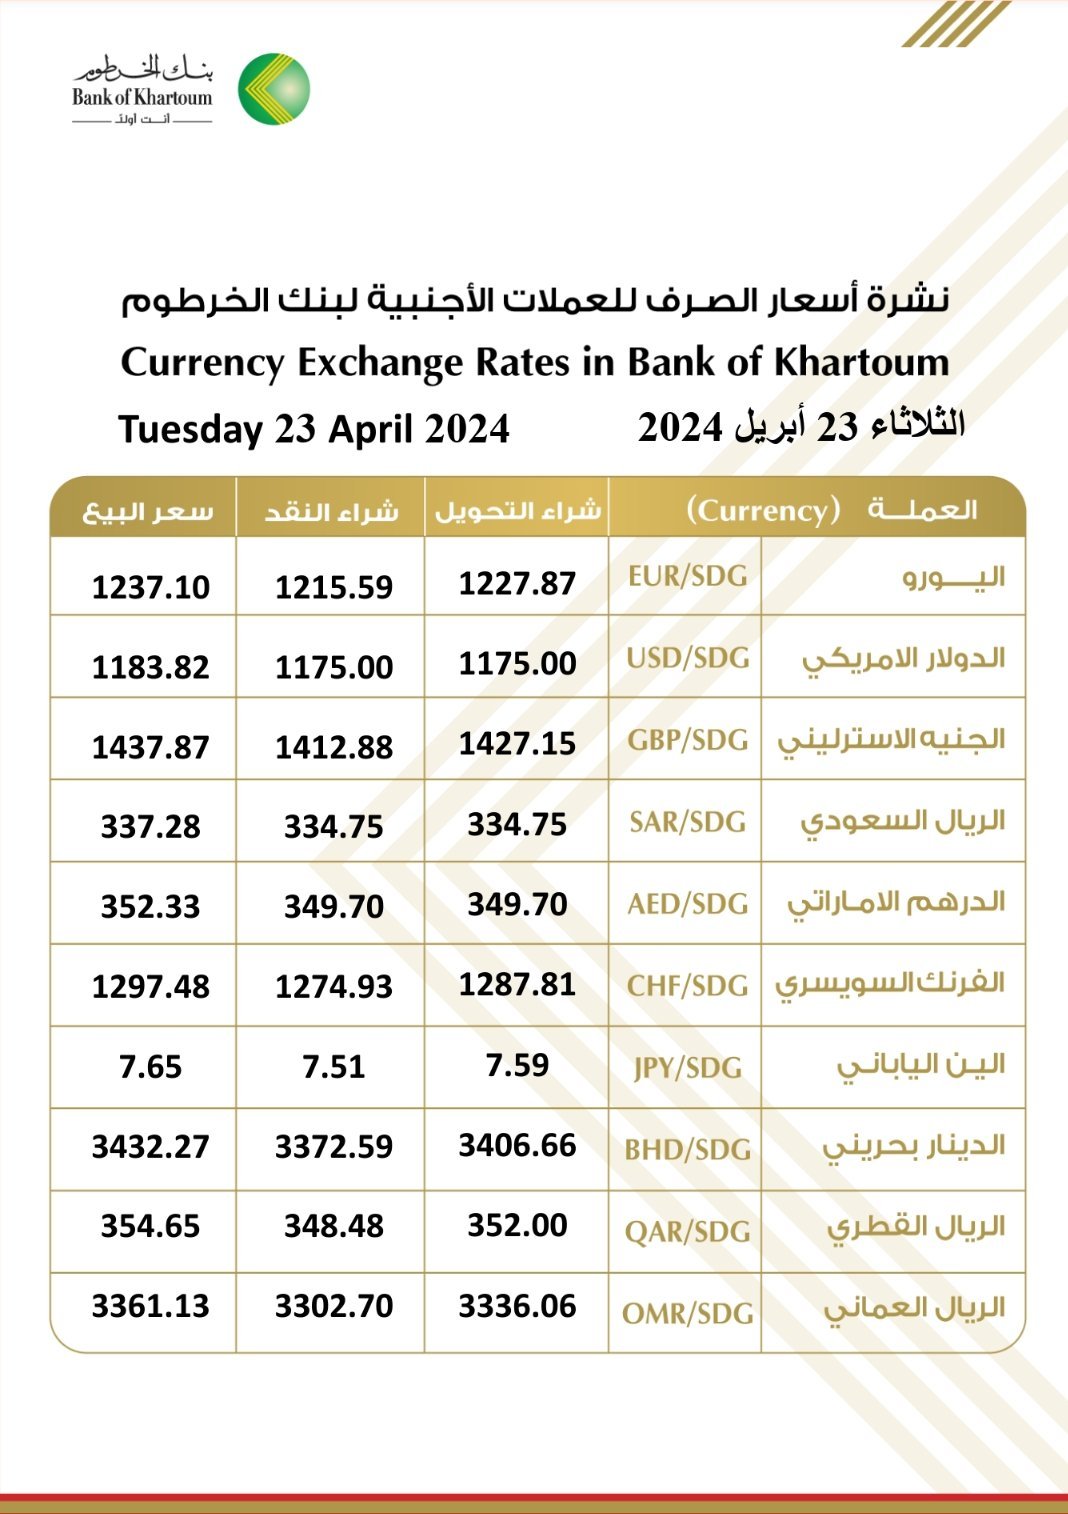 بنك الخرطوم يعلن أسعار صرف الدولار والعملات الأجنبية اليوم الثلاثاء 23 أبريل 2024